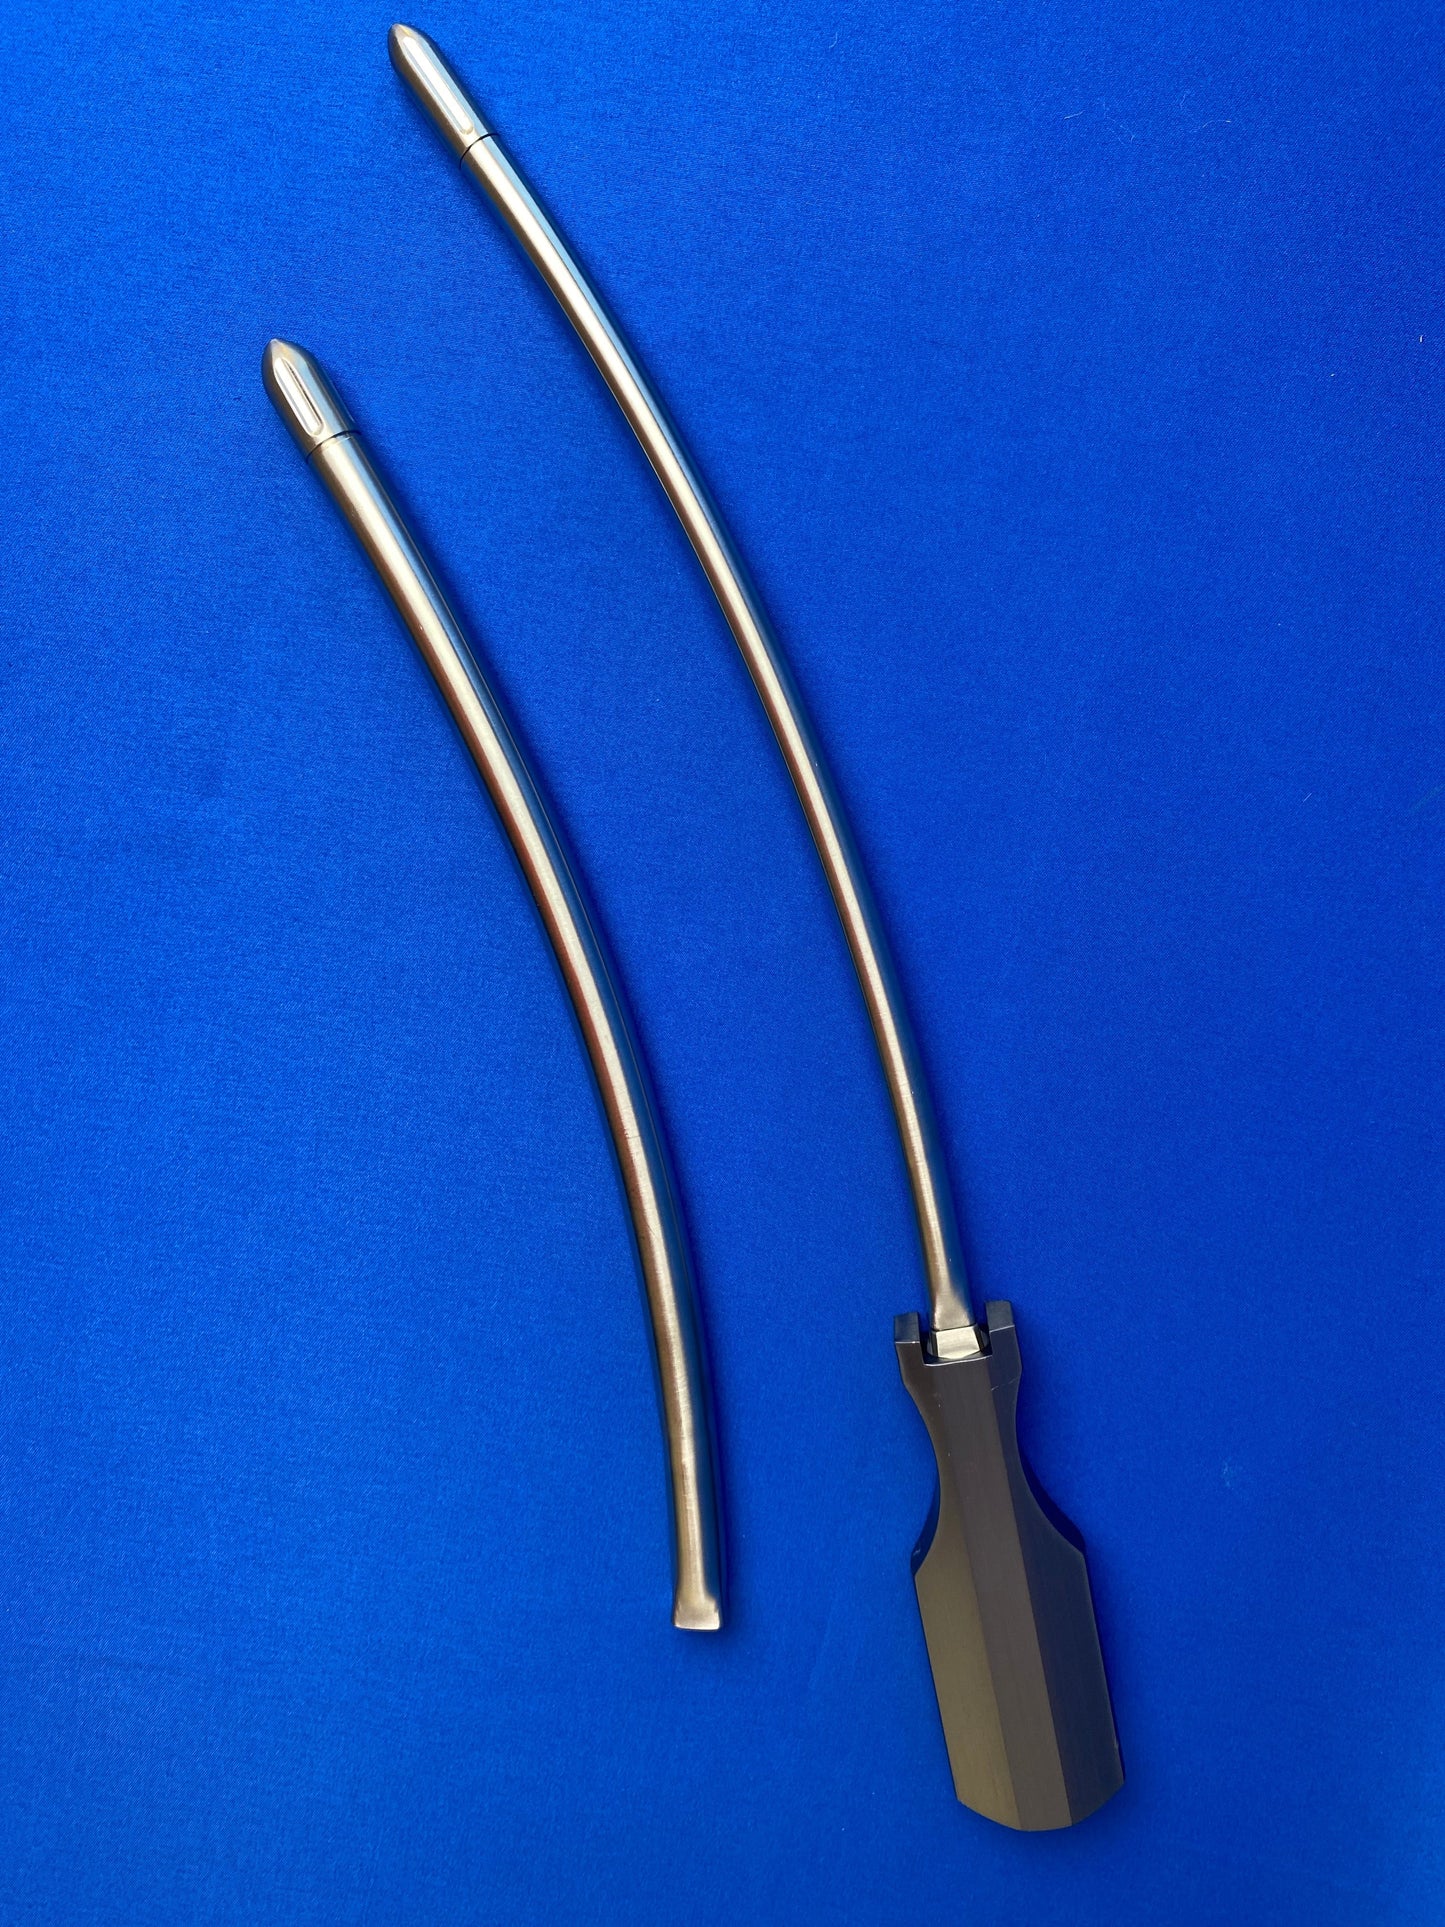 6 and 8mm Slight Curve 25cm Vascular Tunneler Kit